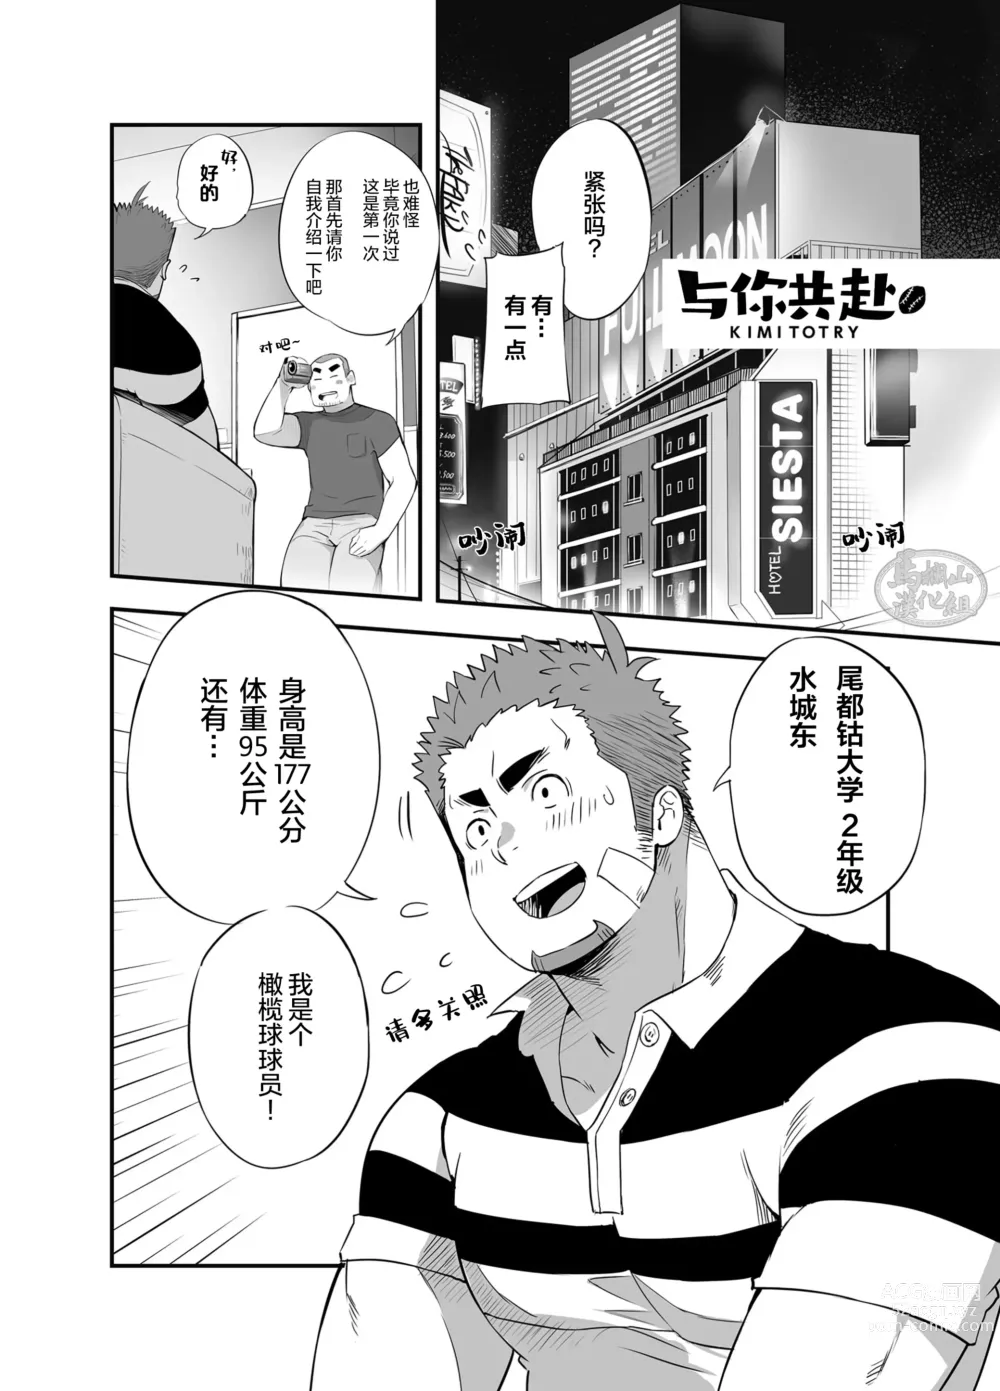 Page 2 of manga 君とトライ